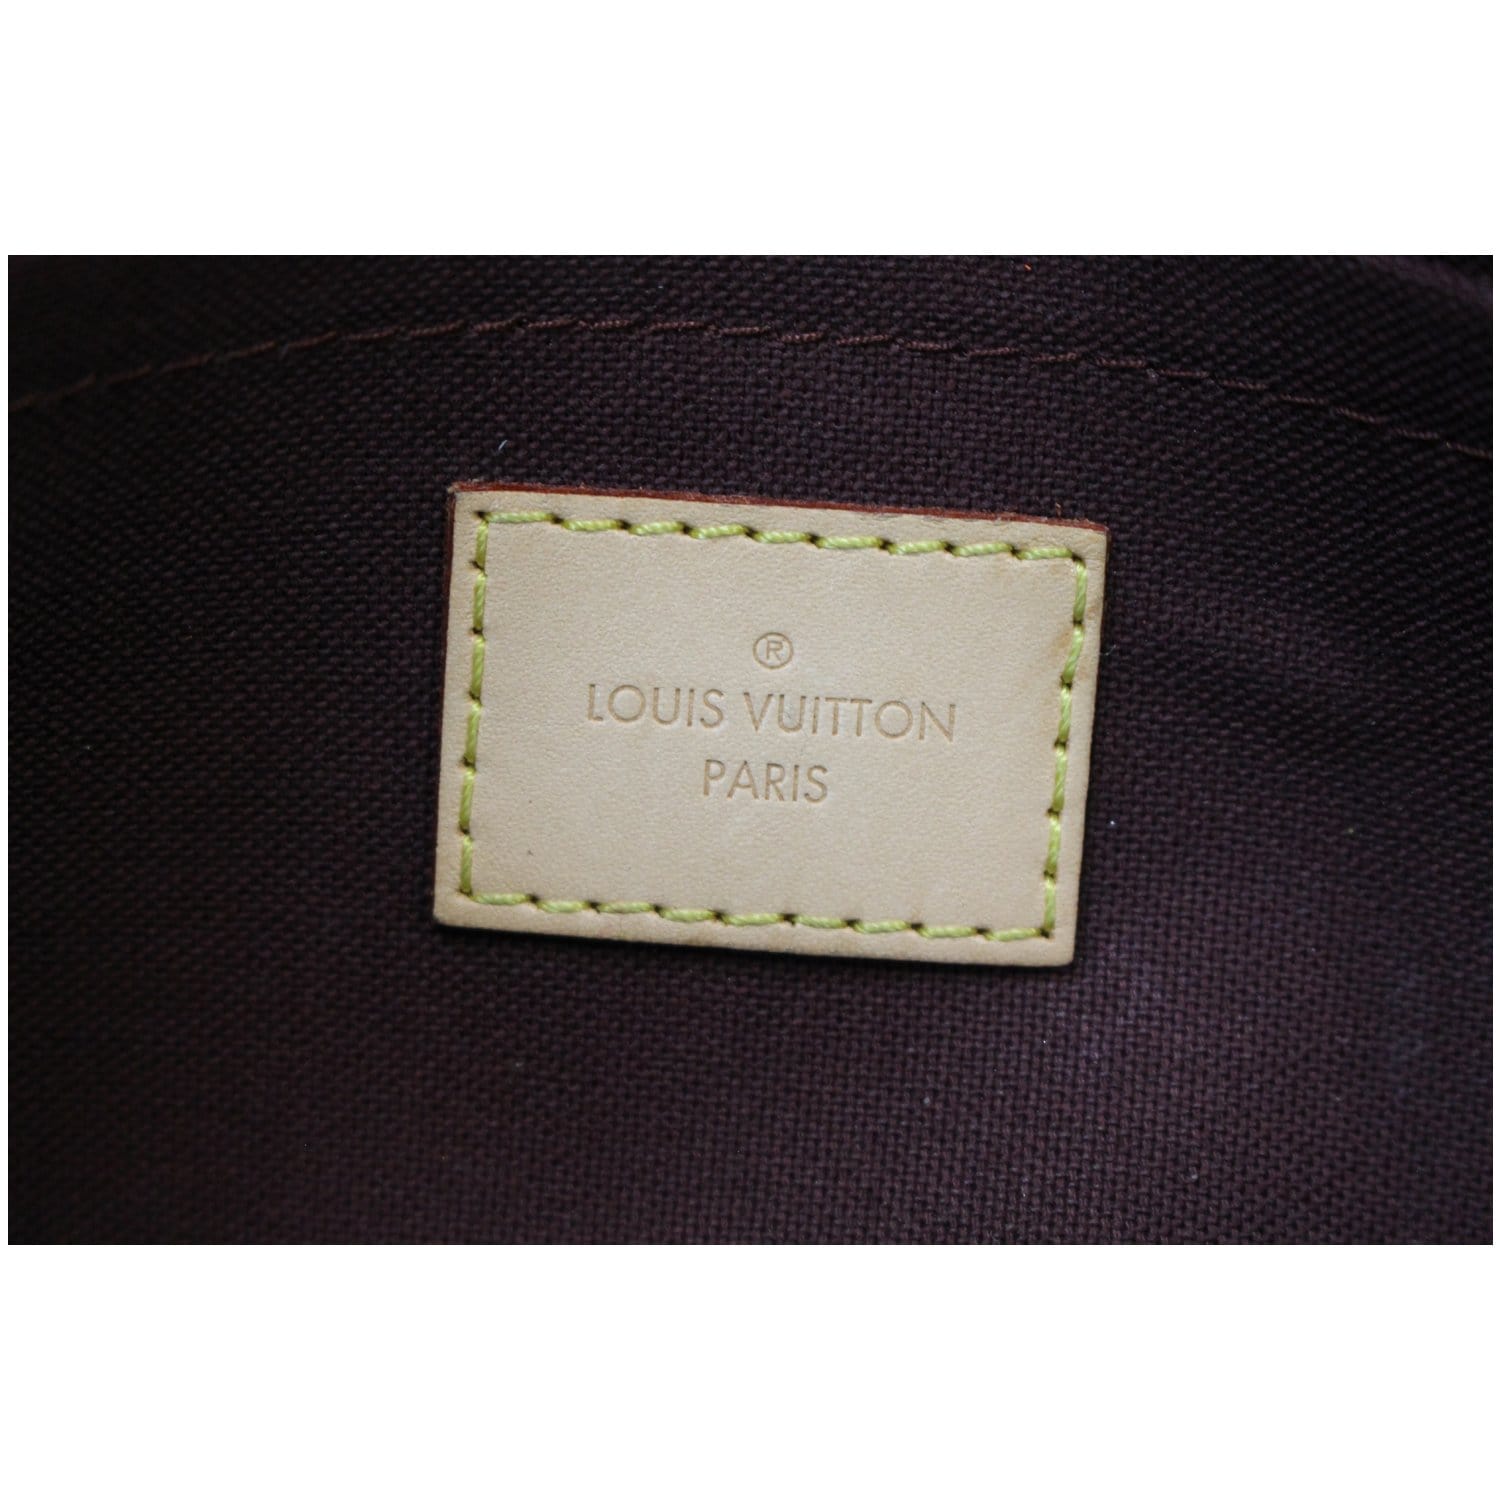 Authentic Louis Vuitton Favorite MM Monogram Crossbody Clutch Handbag &  Dust Bag